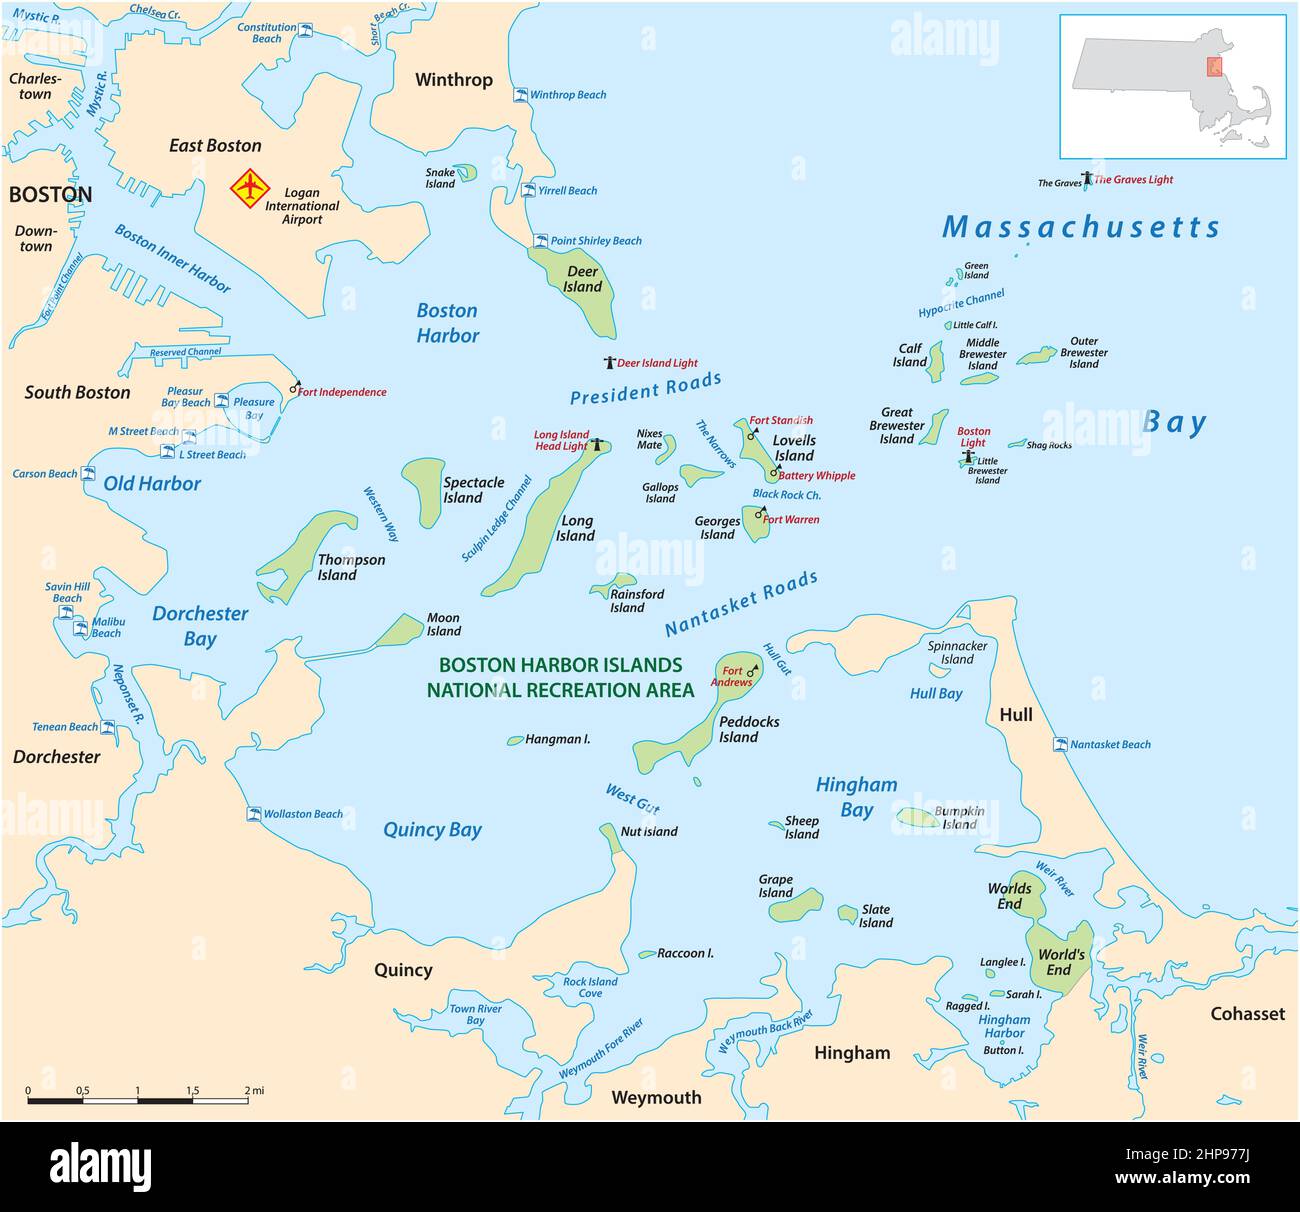 Carte de la zone de loisirs nationale des îles du port de Boston, Massachusetts, États-Unis Illustration de Vecteur